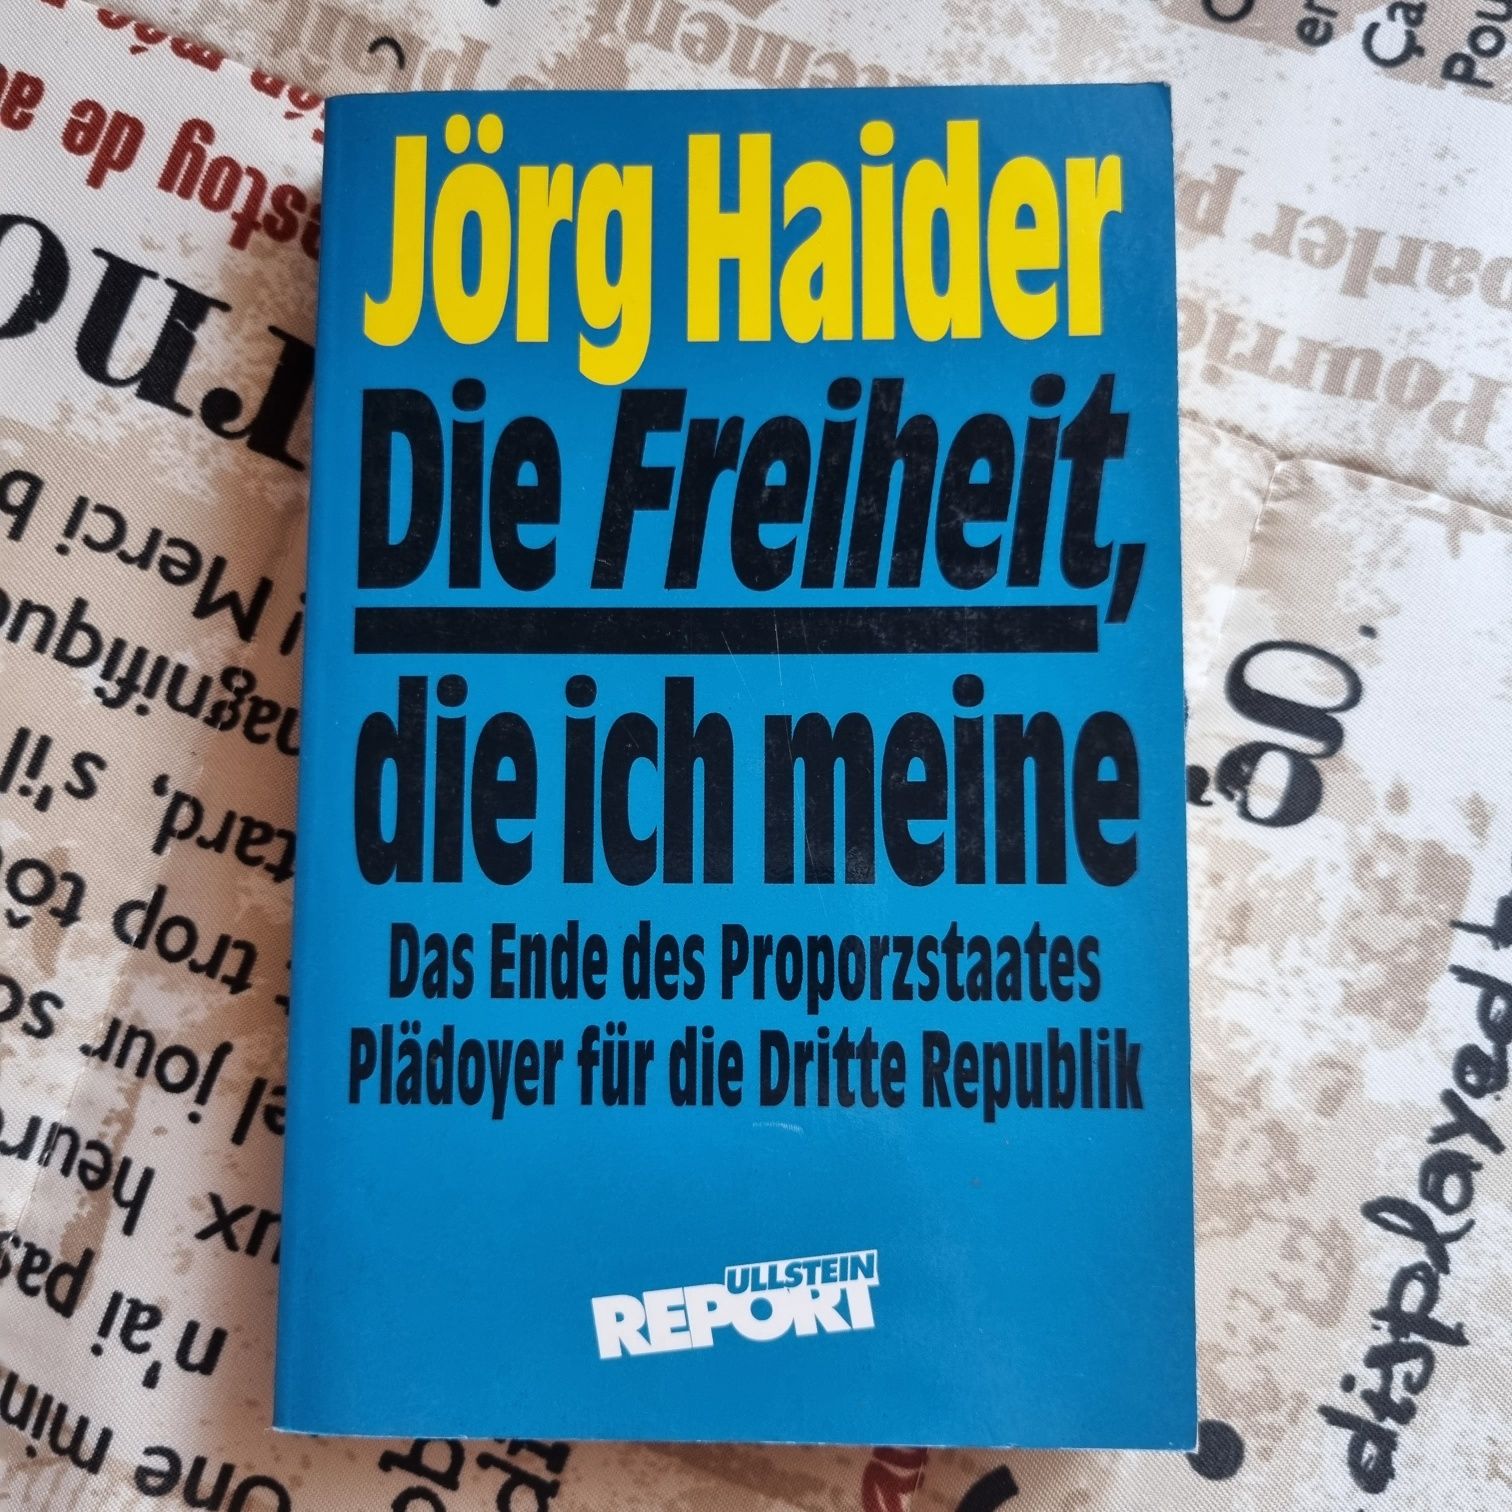 Немецкая Йорг Хайдера Jorg Haider Die Freiheit die ich me дитячі книги